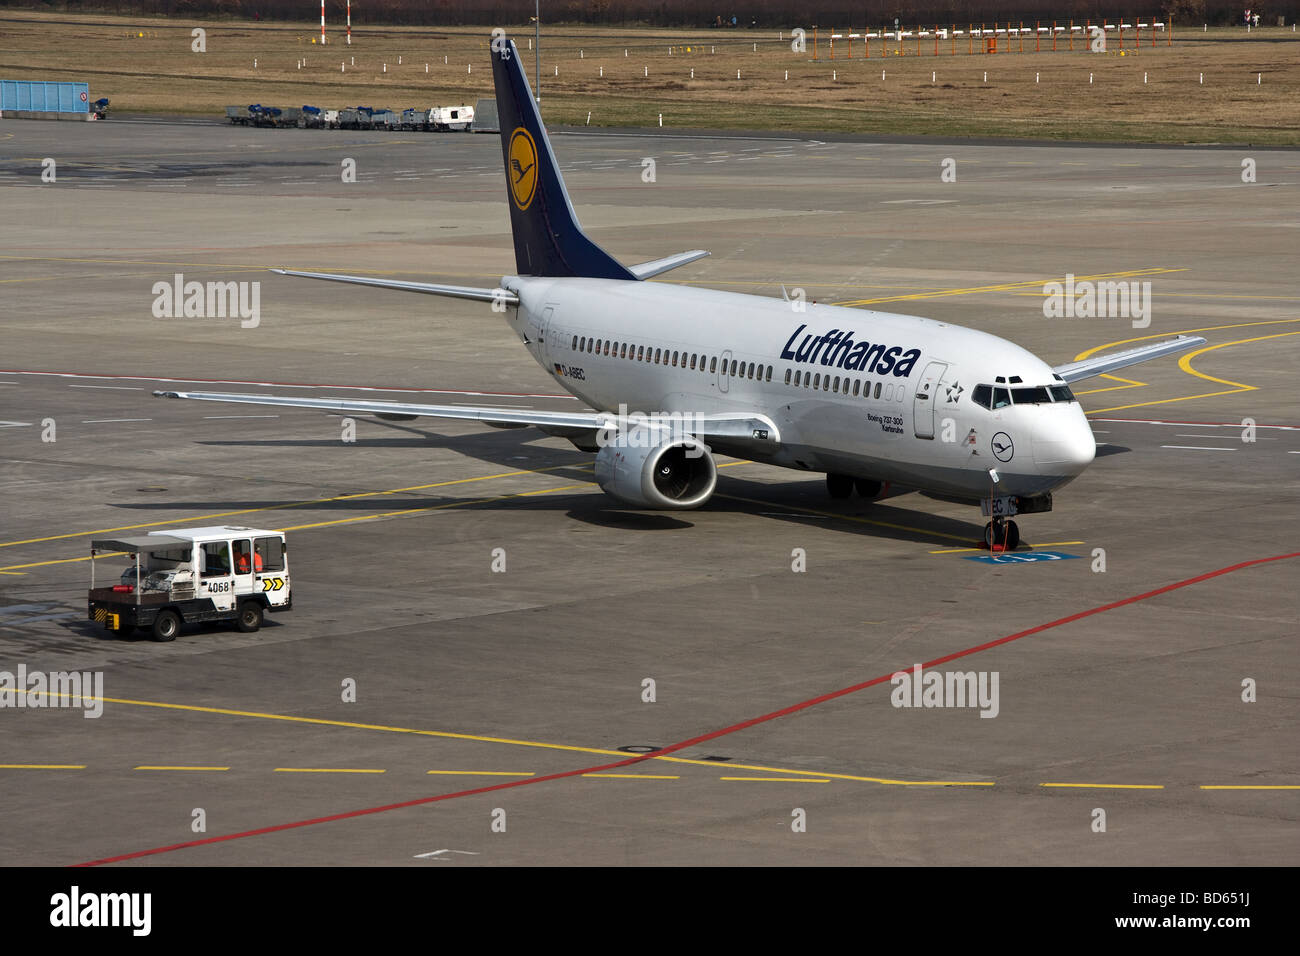 L'avion de Lufthansa à l'aéroport de Cologne Bonn Allemagne Banque D'Images